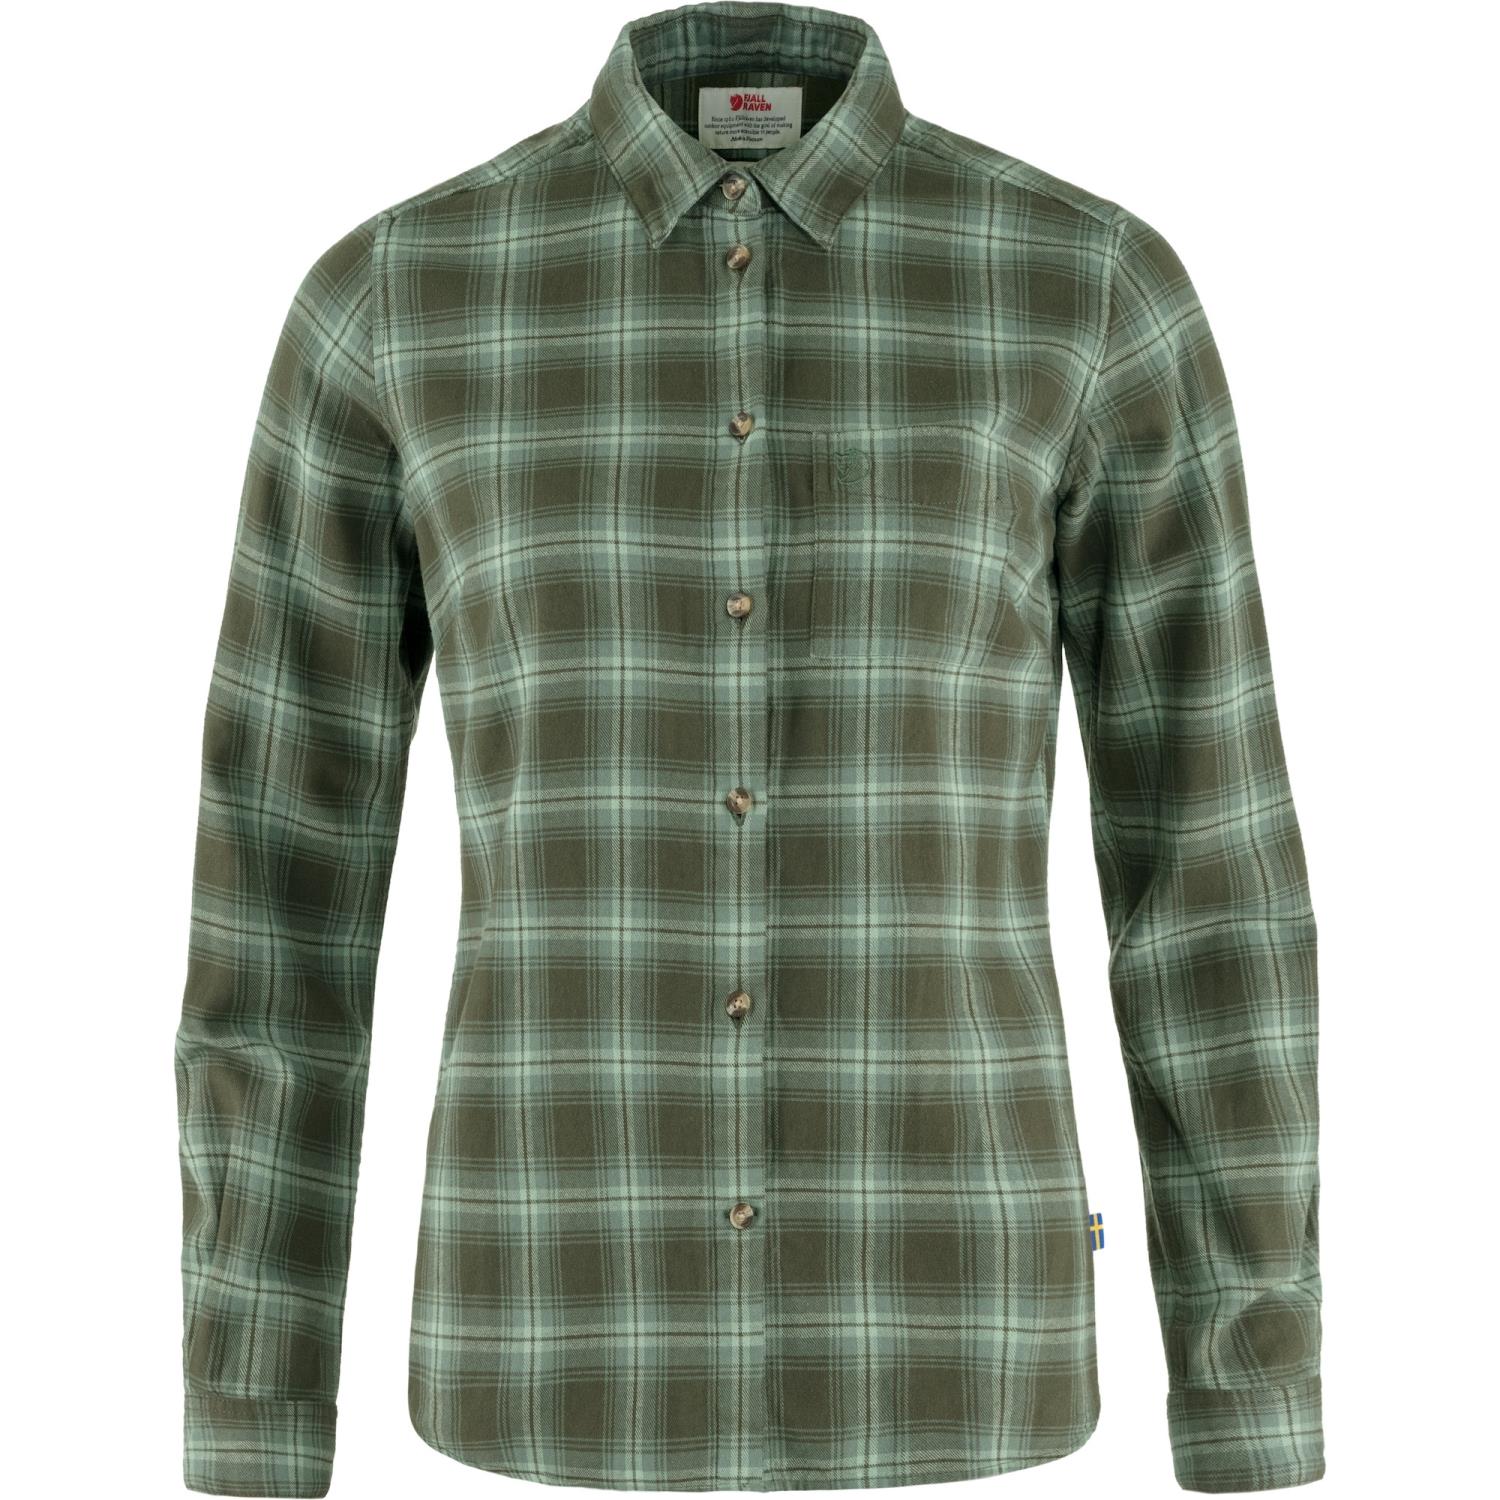 Fjellreven Övik Flannel Shirt W Deep Forest-Patina Green